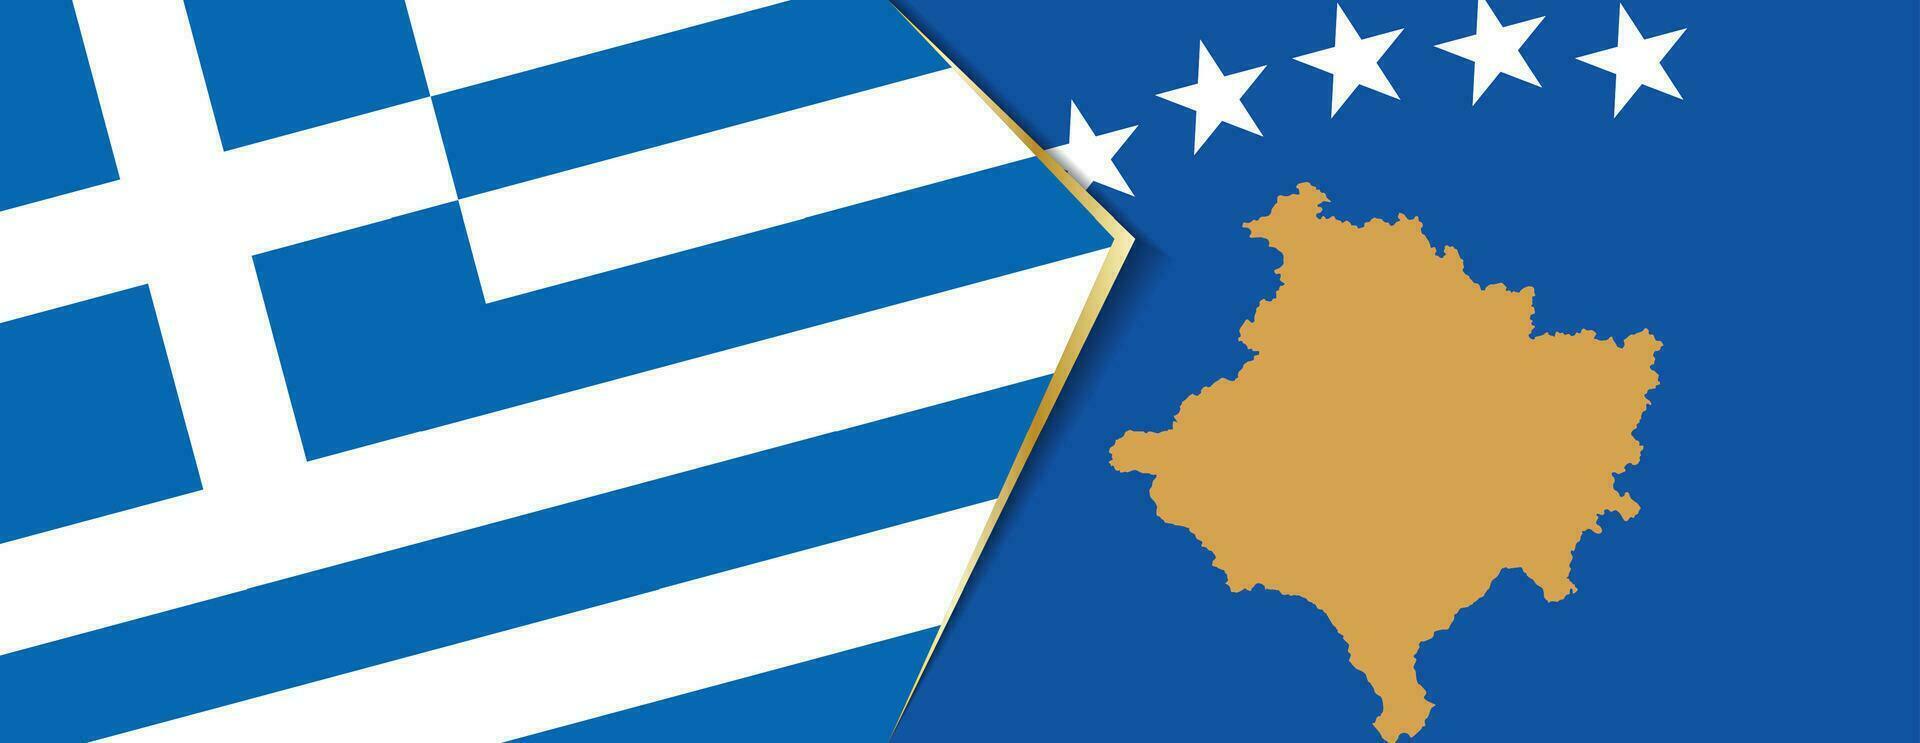 Grécia e Kosovo bandeiras, dois vetor bandeiras.